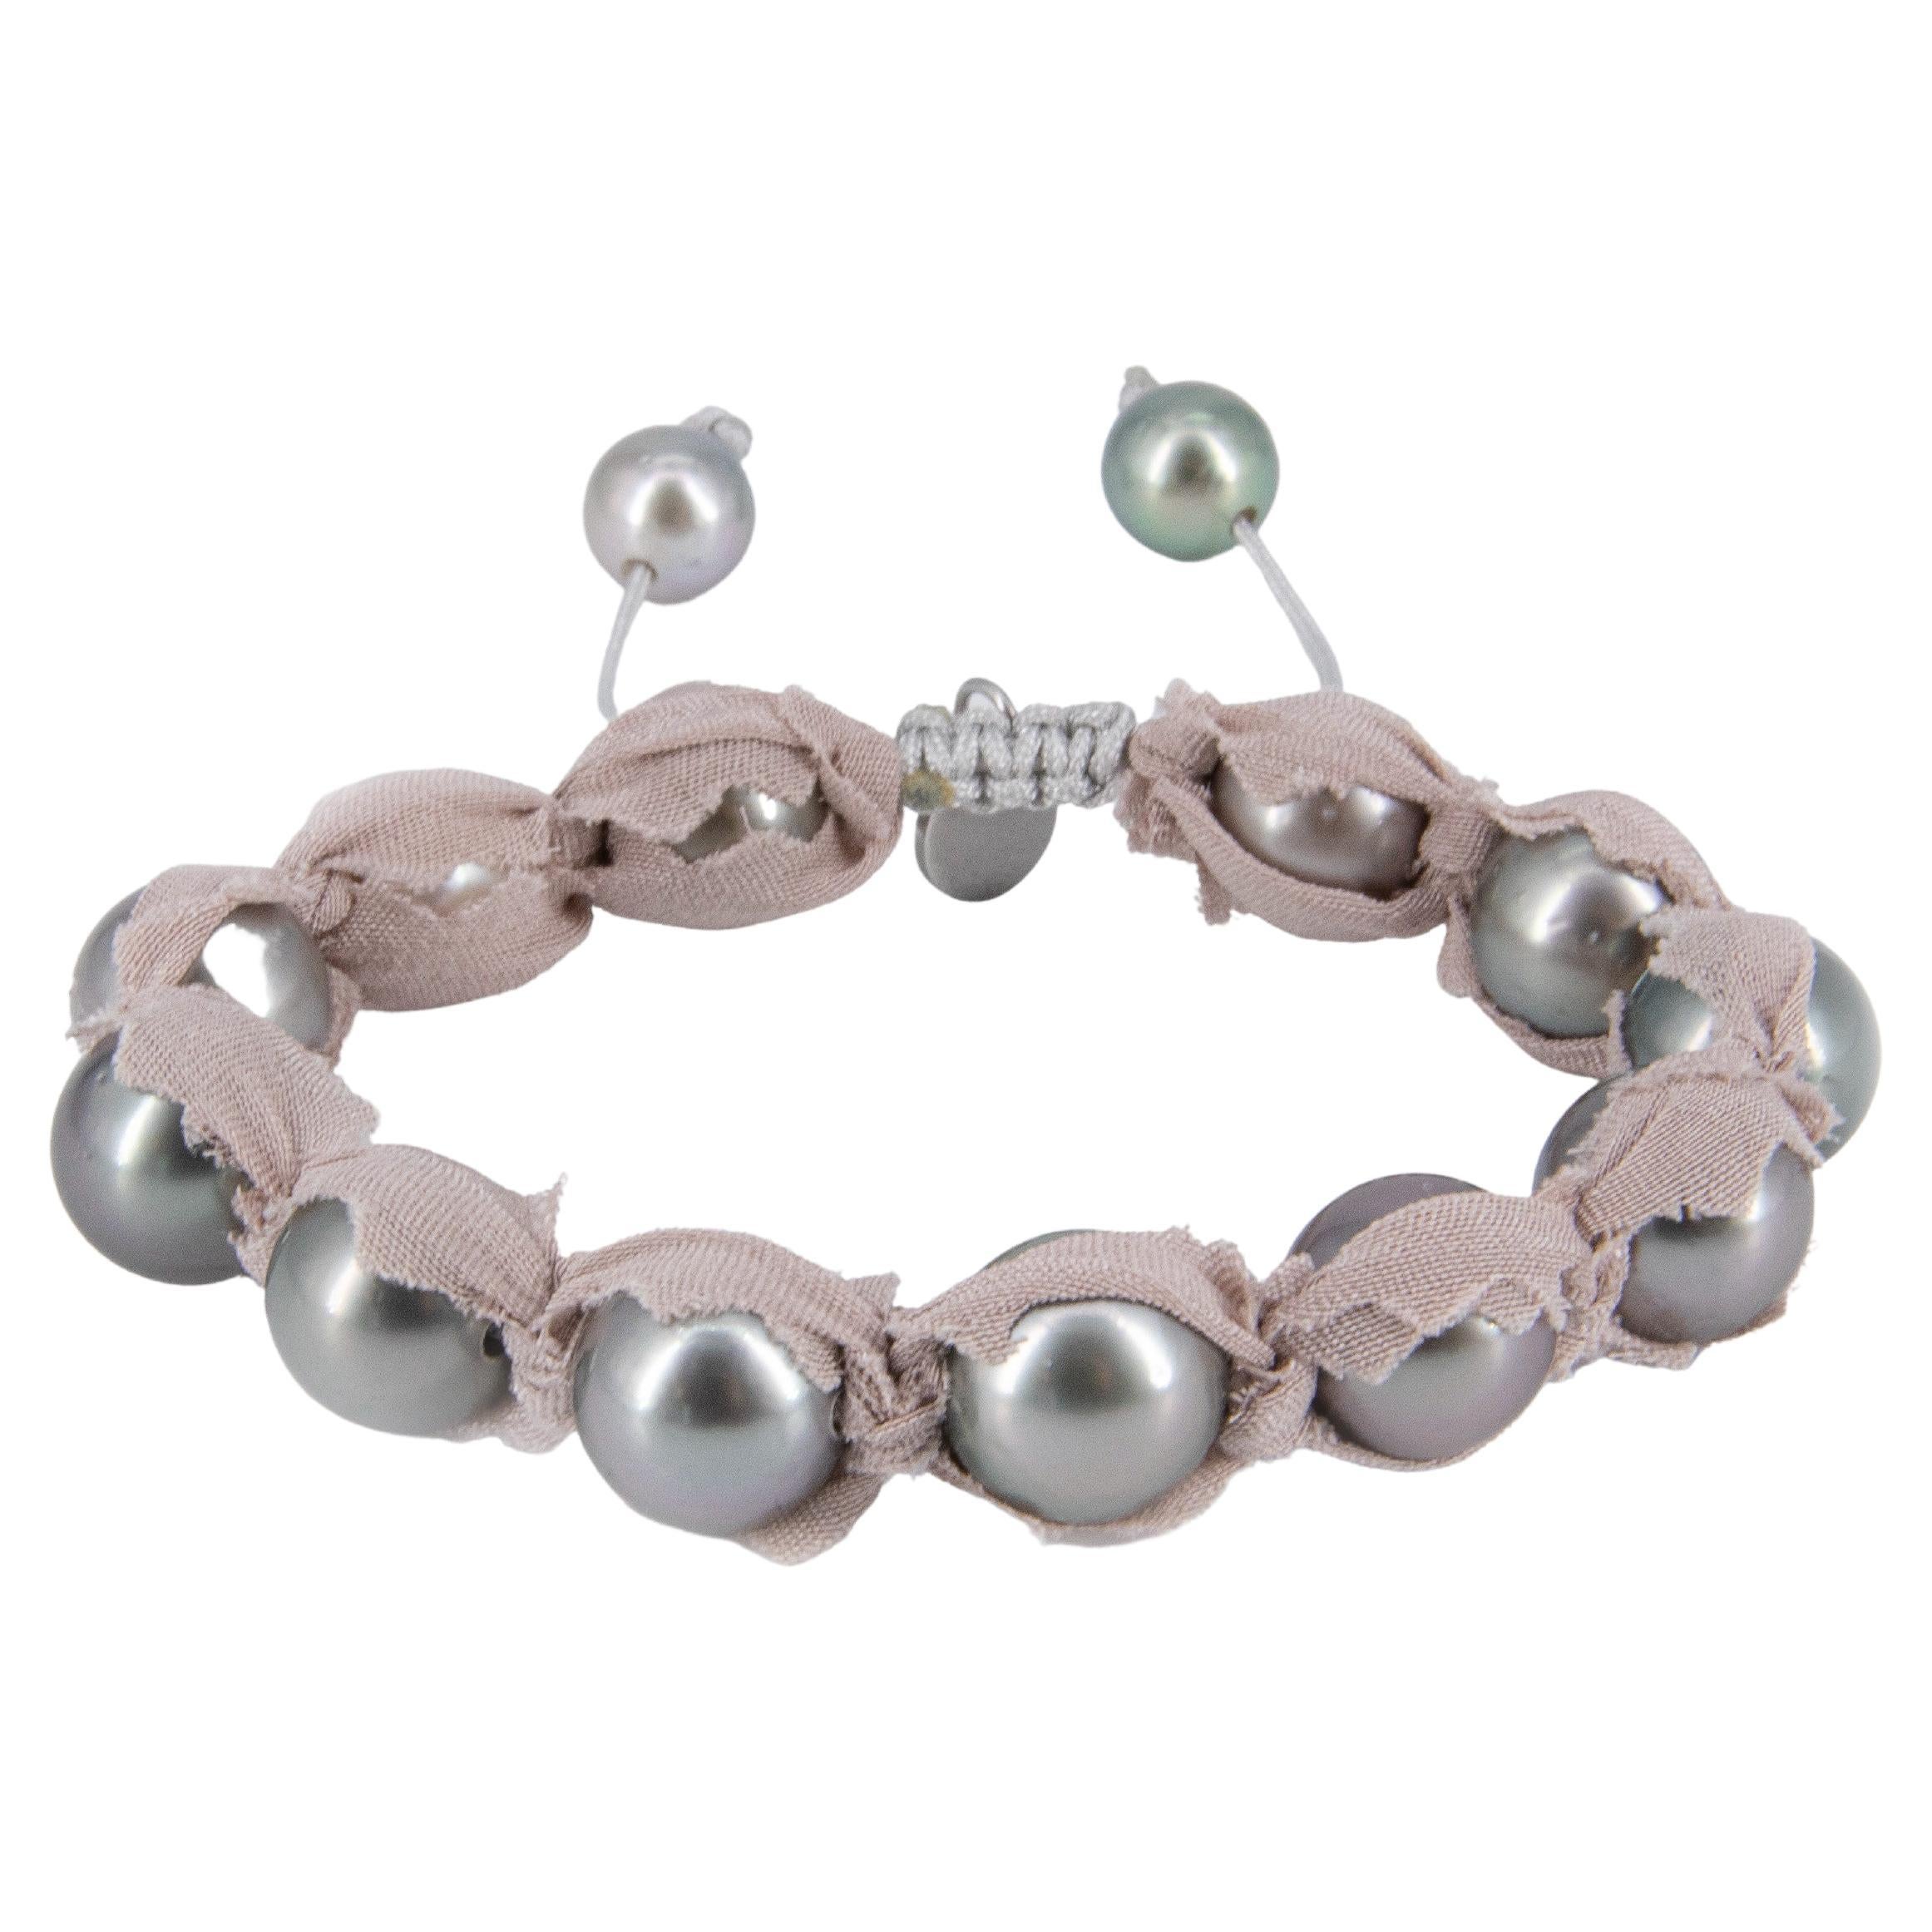 Dieses Armband besteht aus grauen Tahiti-Perlen mit 2 Diamantpavé-Kegeln aus geschwärztem Sterlingsilber und 3 großen rosé/violett schillernden barocken Süßwasserperlen. Es ist auf einem hochwertigen, mit schwarzer Baumwolle beschichteten Gummiband